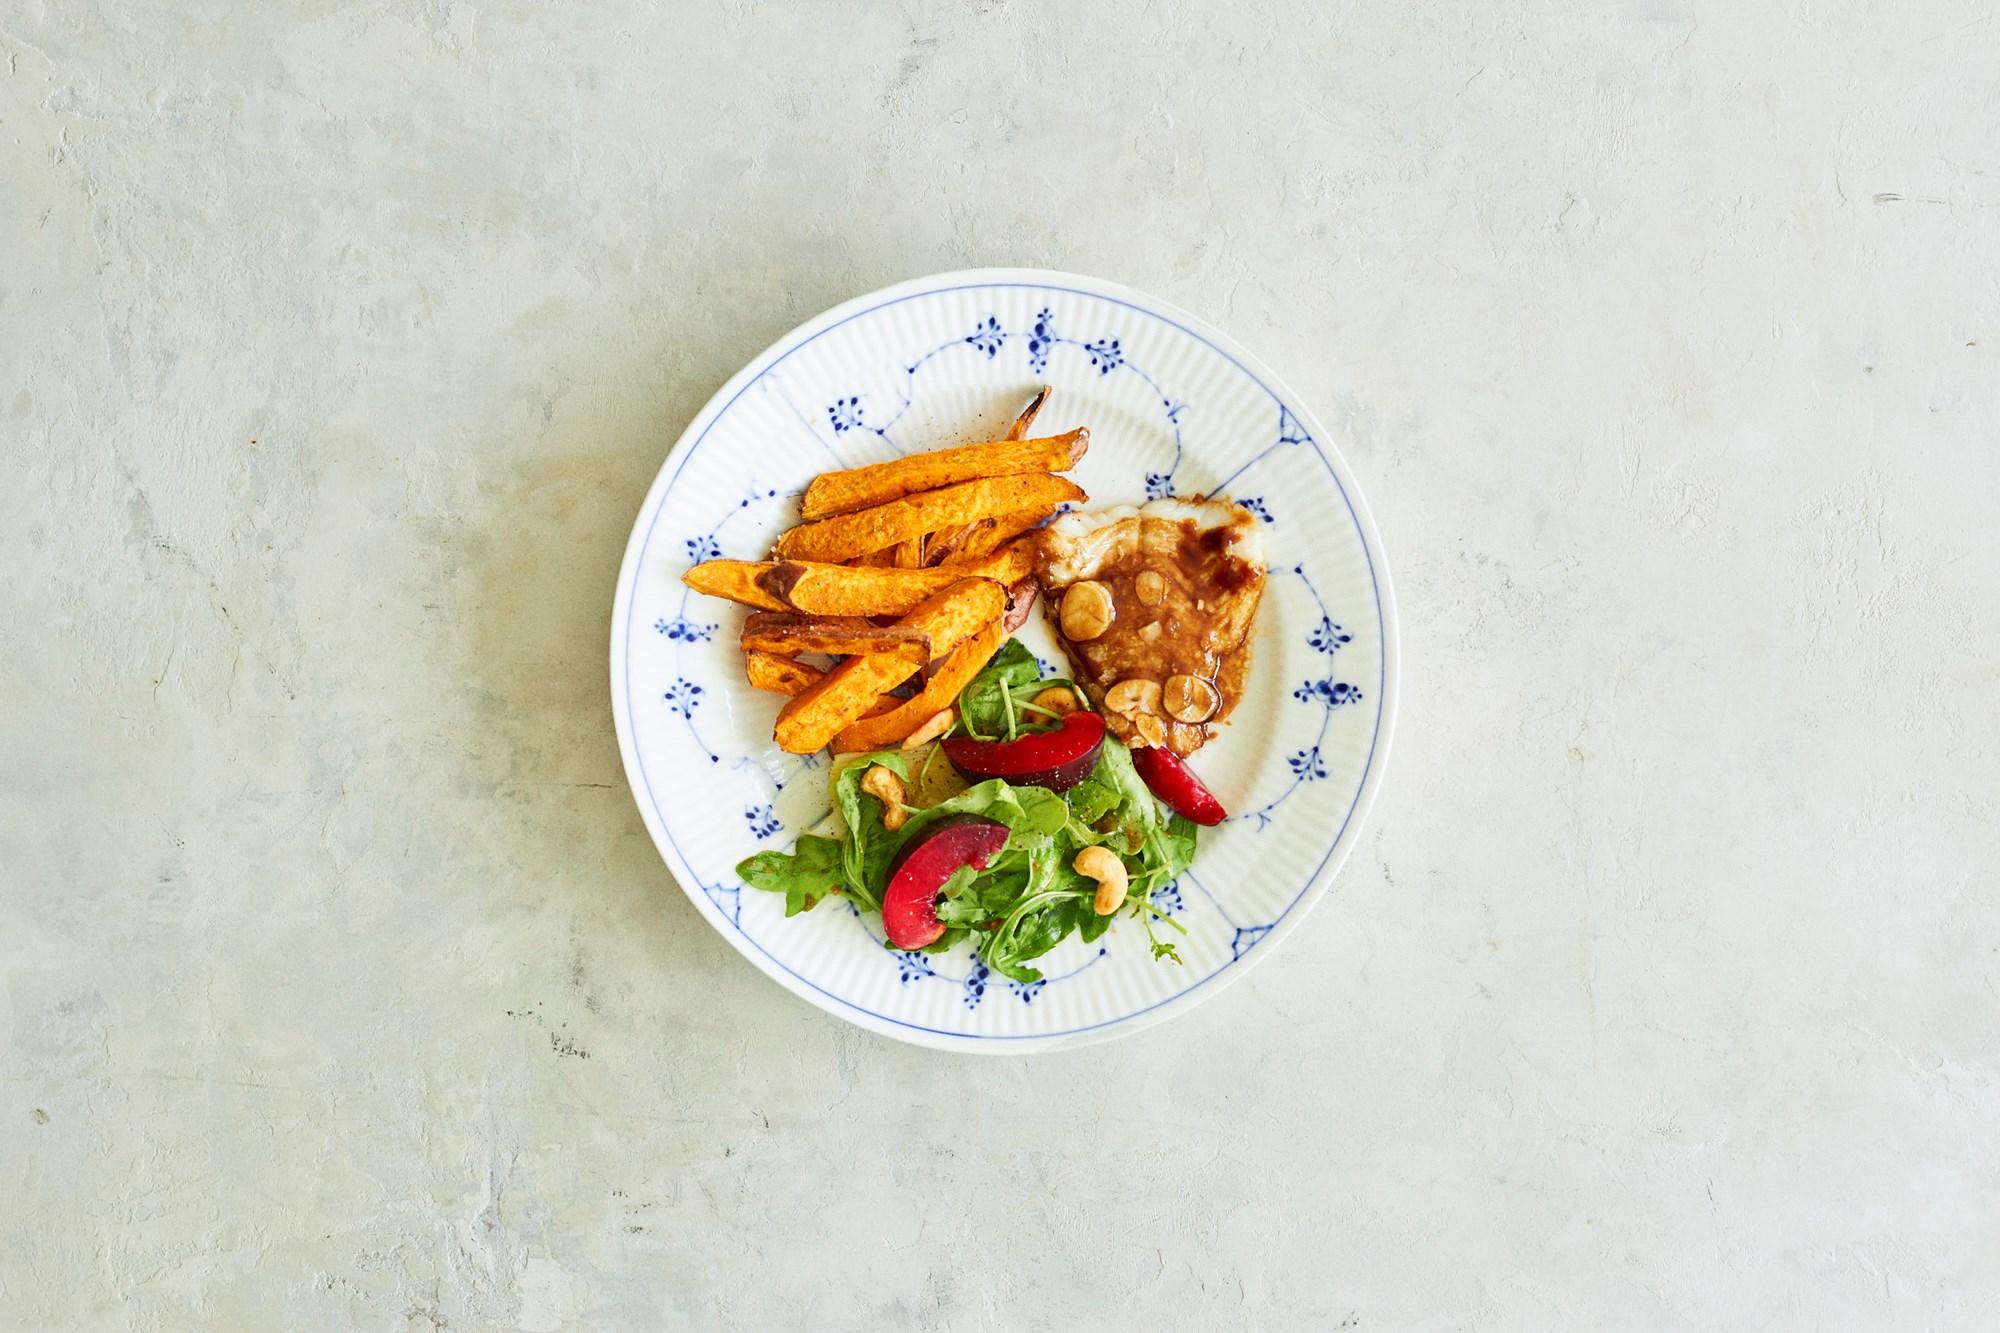 Hoisinstegt torsk med salat på rucola, porrer og nye blommer